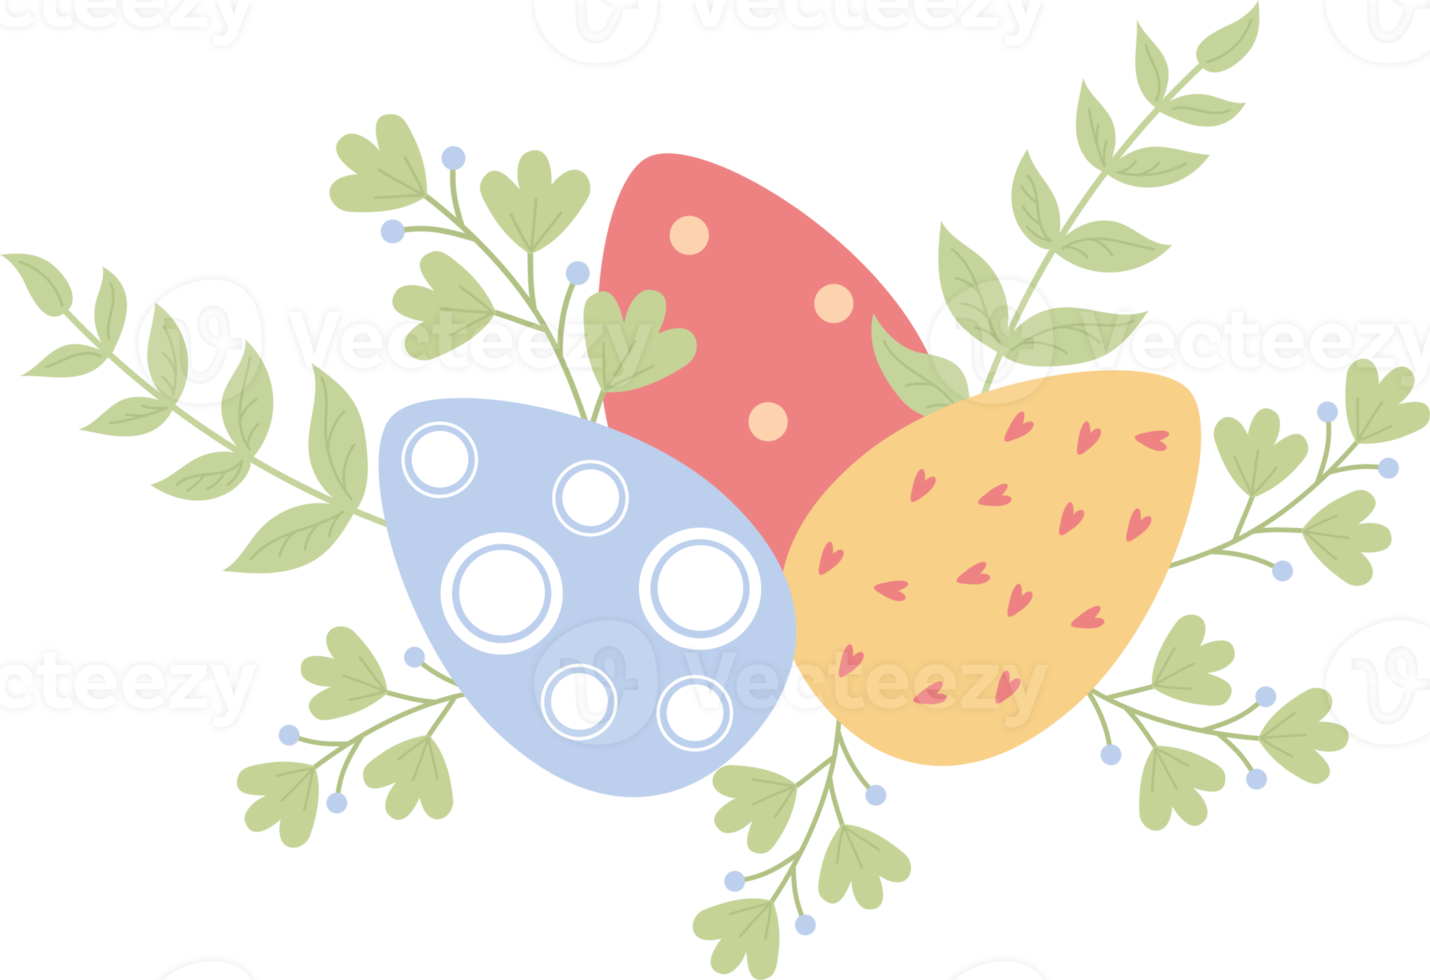 påsk ägg med löv png